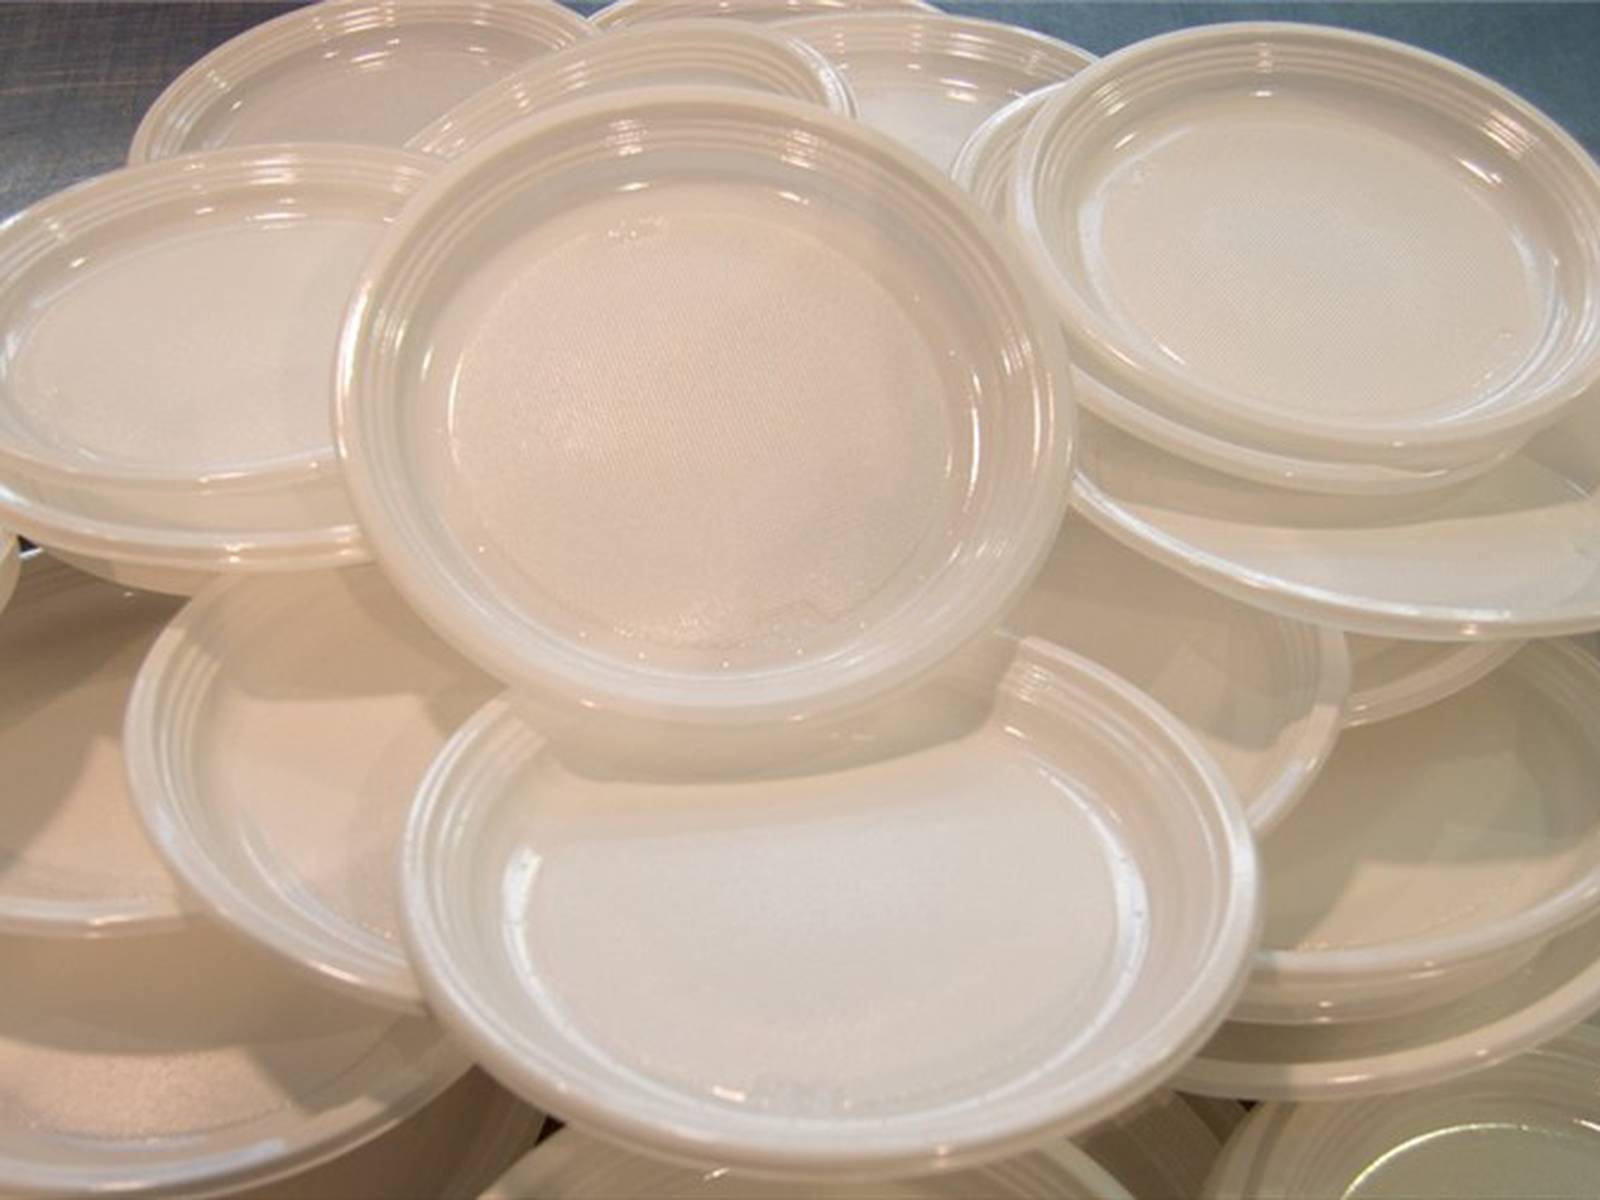 Comer en platos plásticos tiene alguna consecuencia grave para la salud?